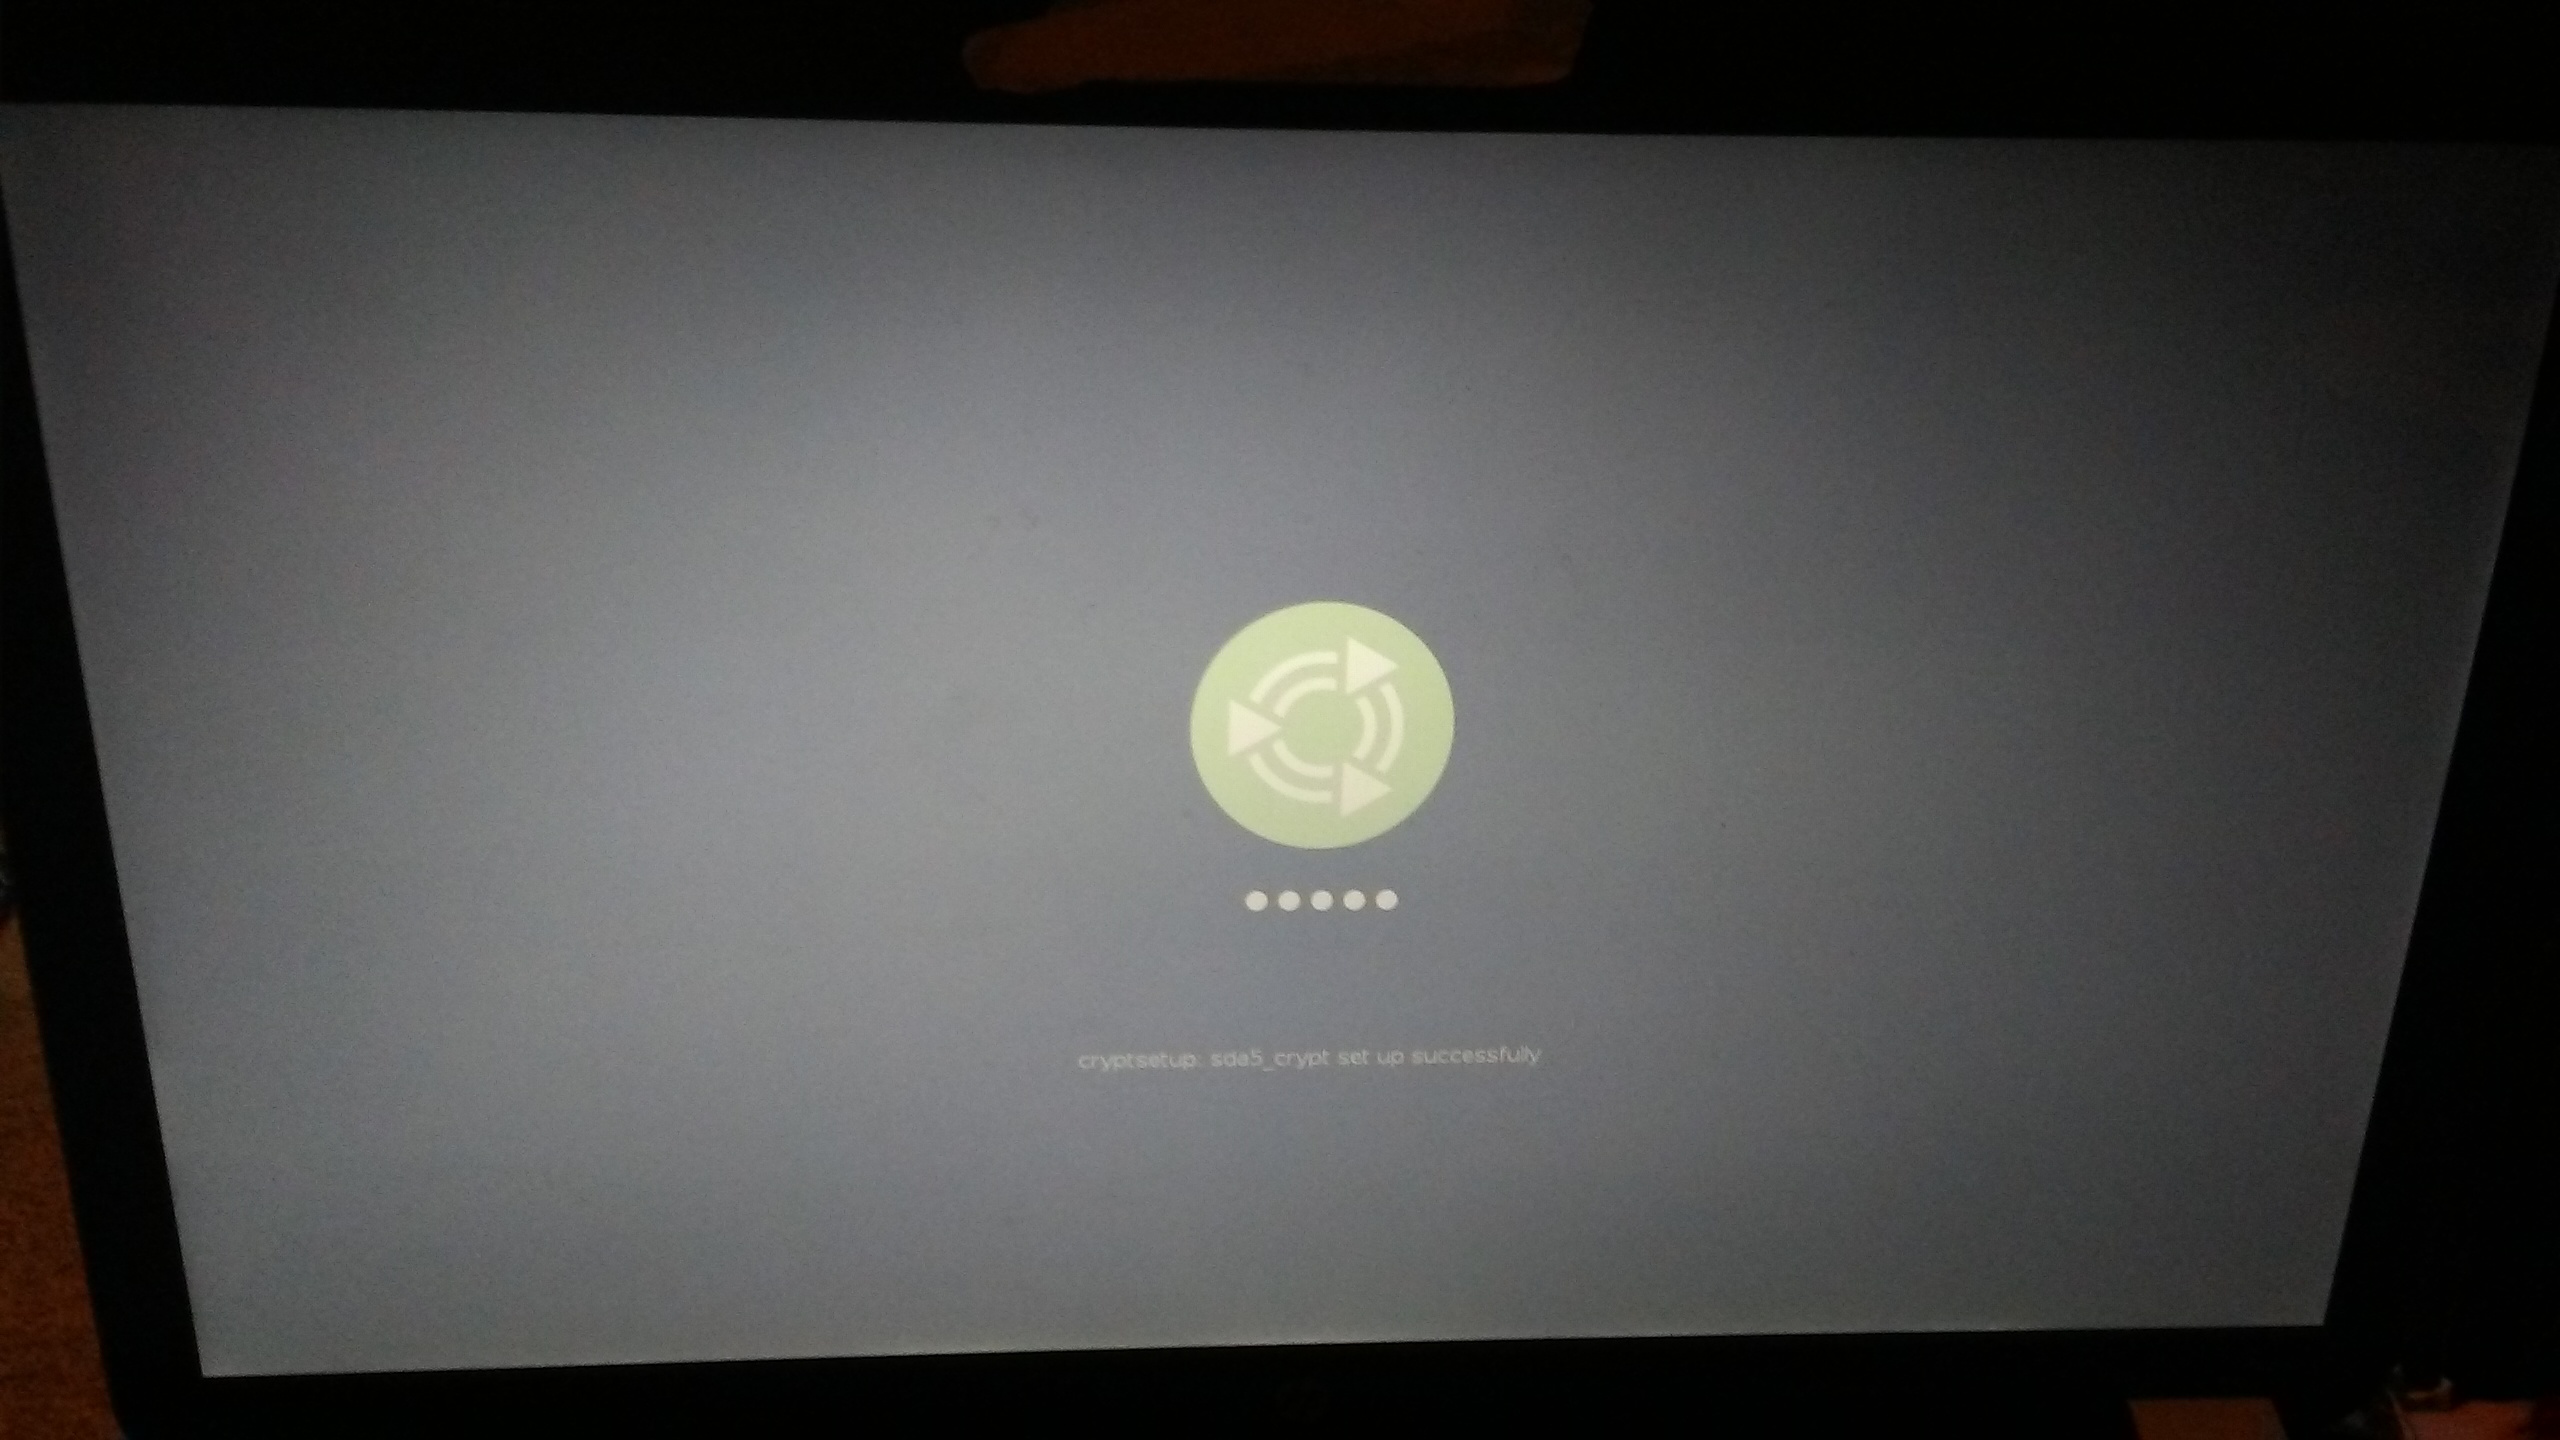 Battle черный экран. Черный экран. Черный экран фото. Microsoft Teams черный экран. Загрузилась Ubuntu в черный экран.